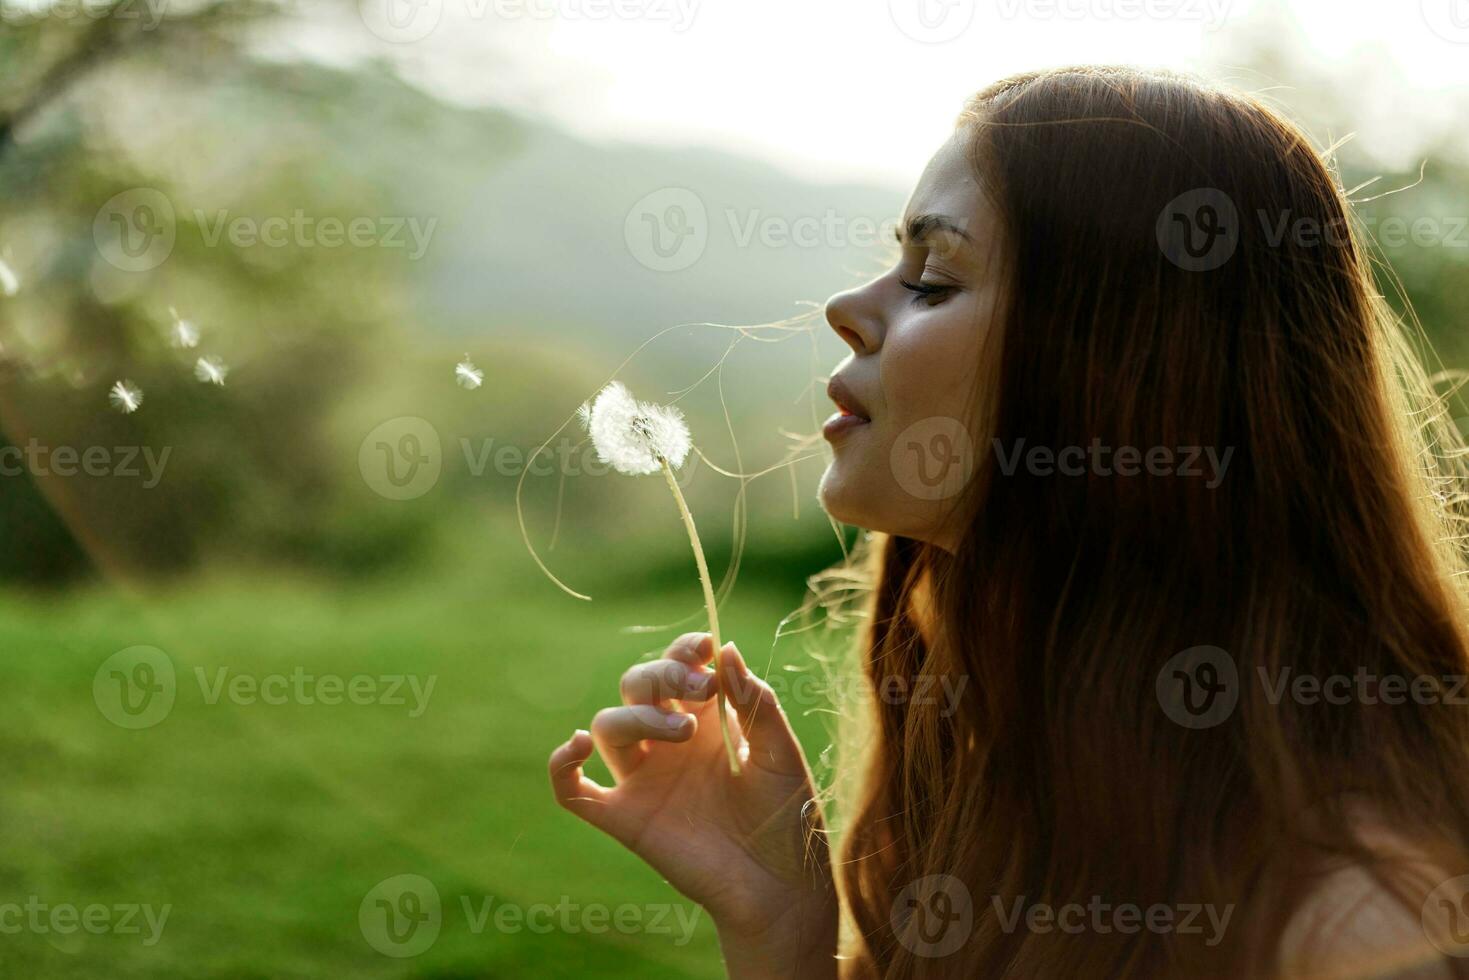 porträtt av en ung kvinna i profil med en maskros blomma i henne hand blåser på den och leende mot de grön sommar gräs i de miljö Sol i natur foto